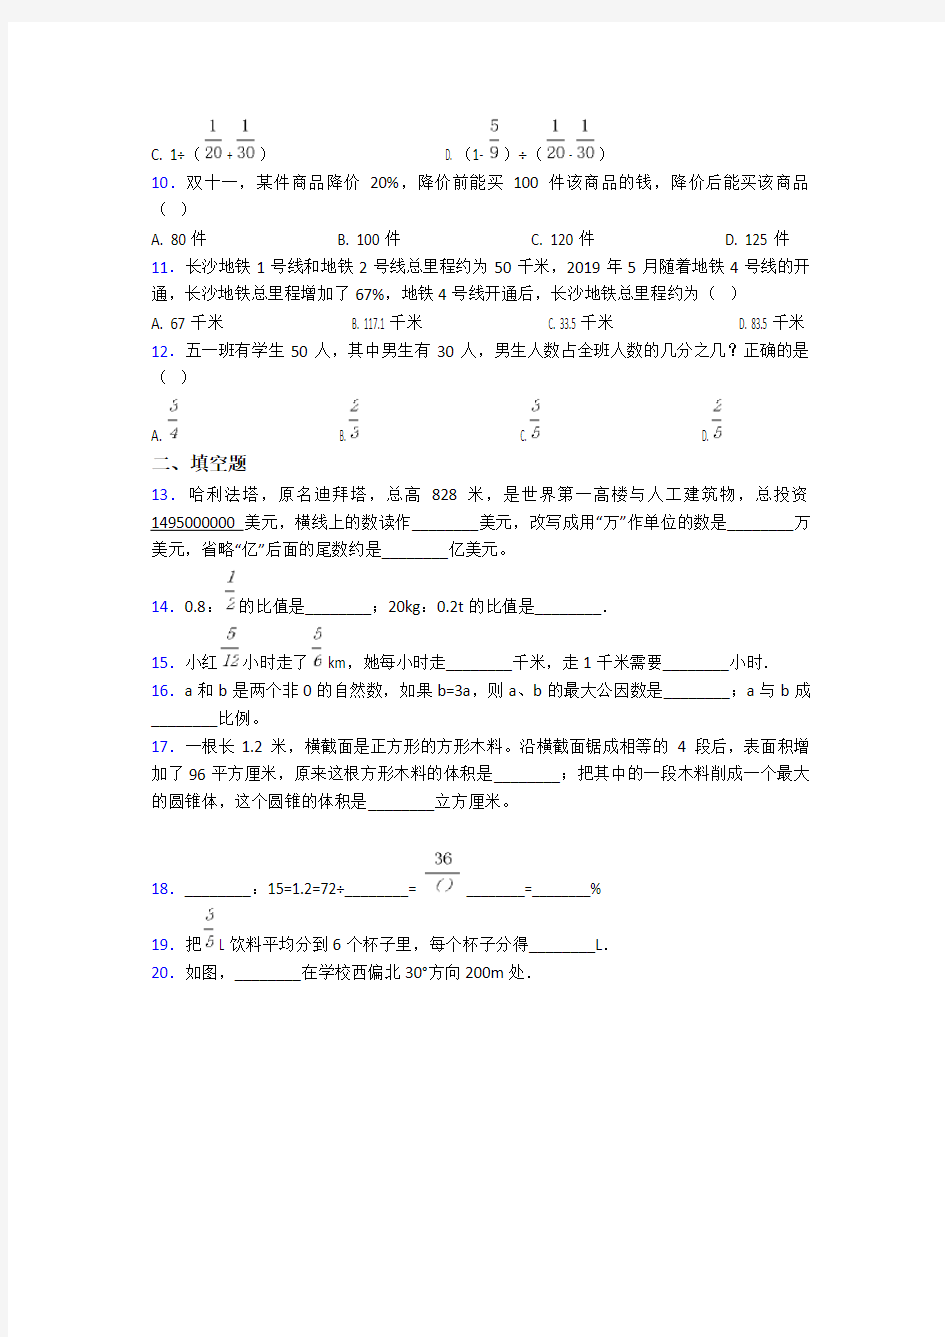 2020-2021江阴市华西实验学校(中学部)小学数学小升初试题附答案